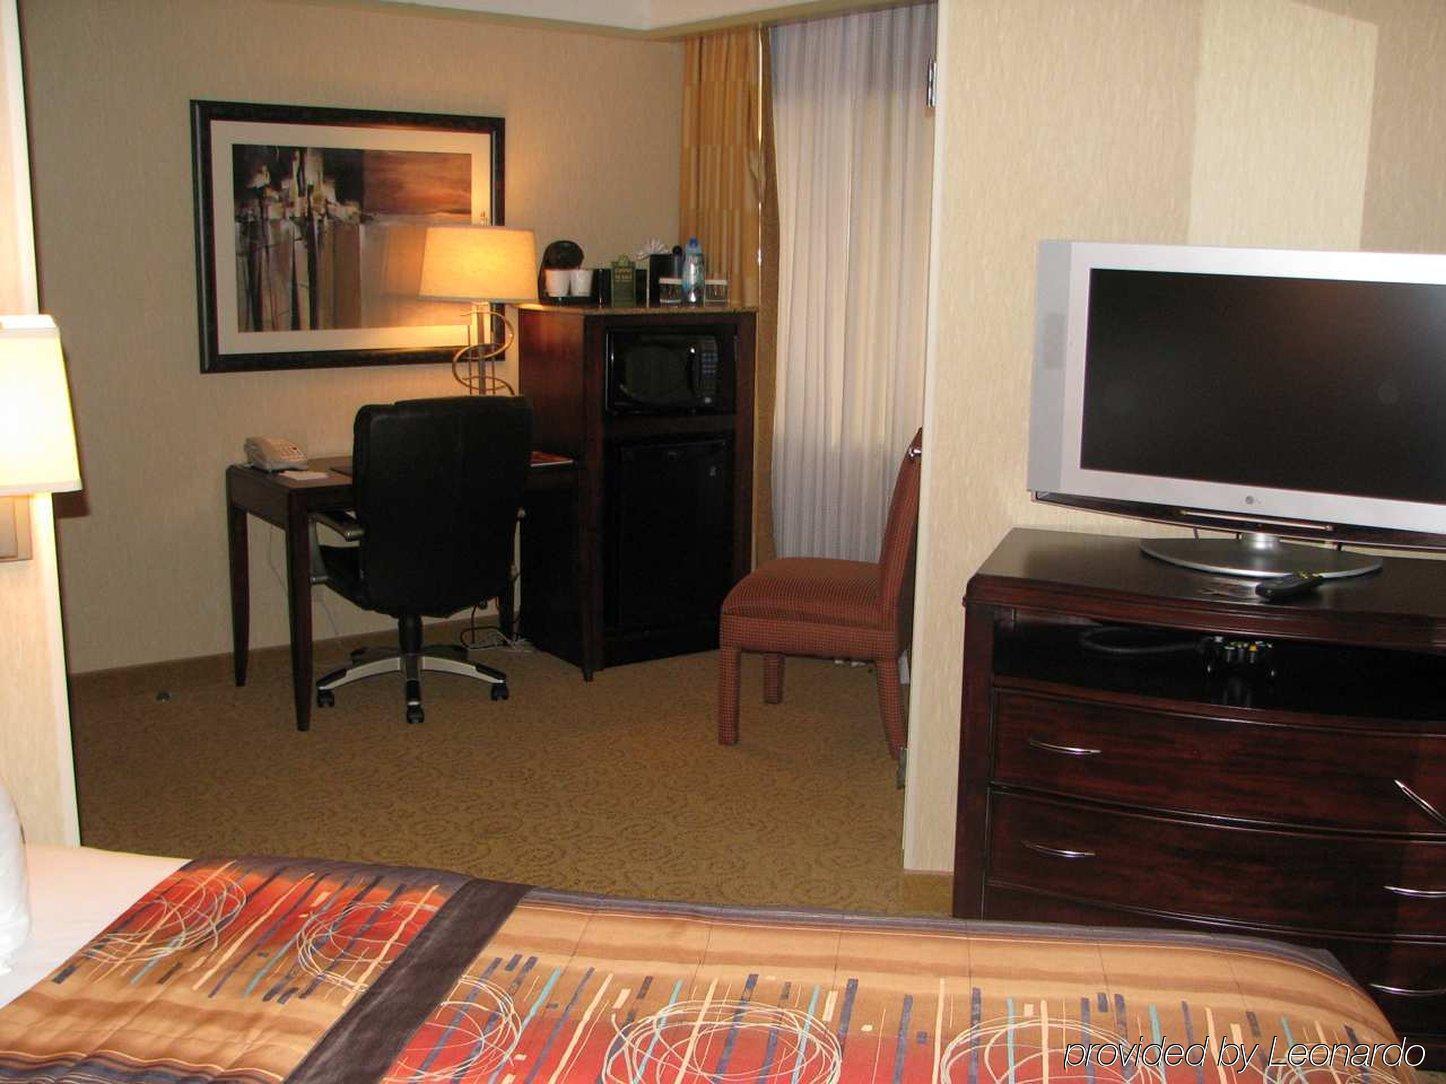 Embassy Suites By Hilton Atlanta Galleria Room photo